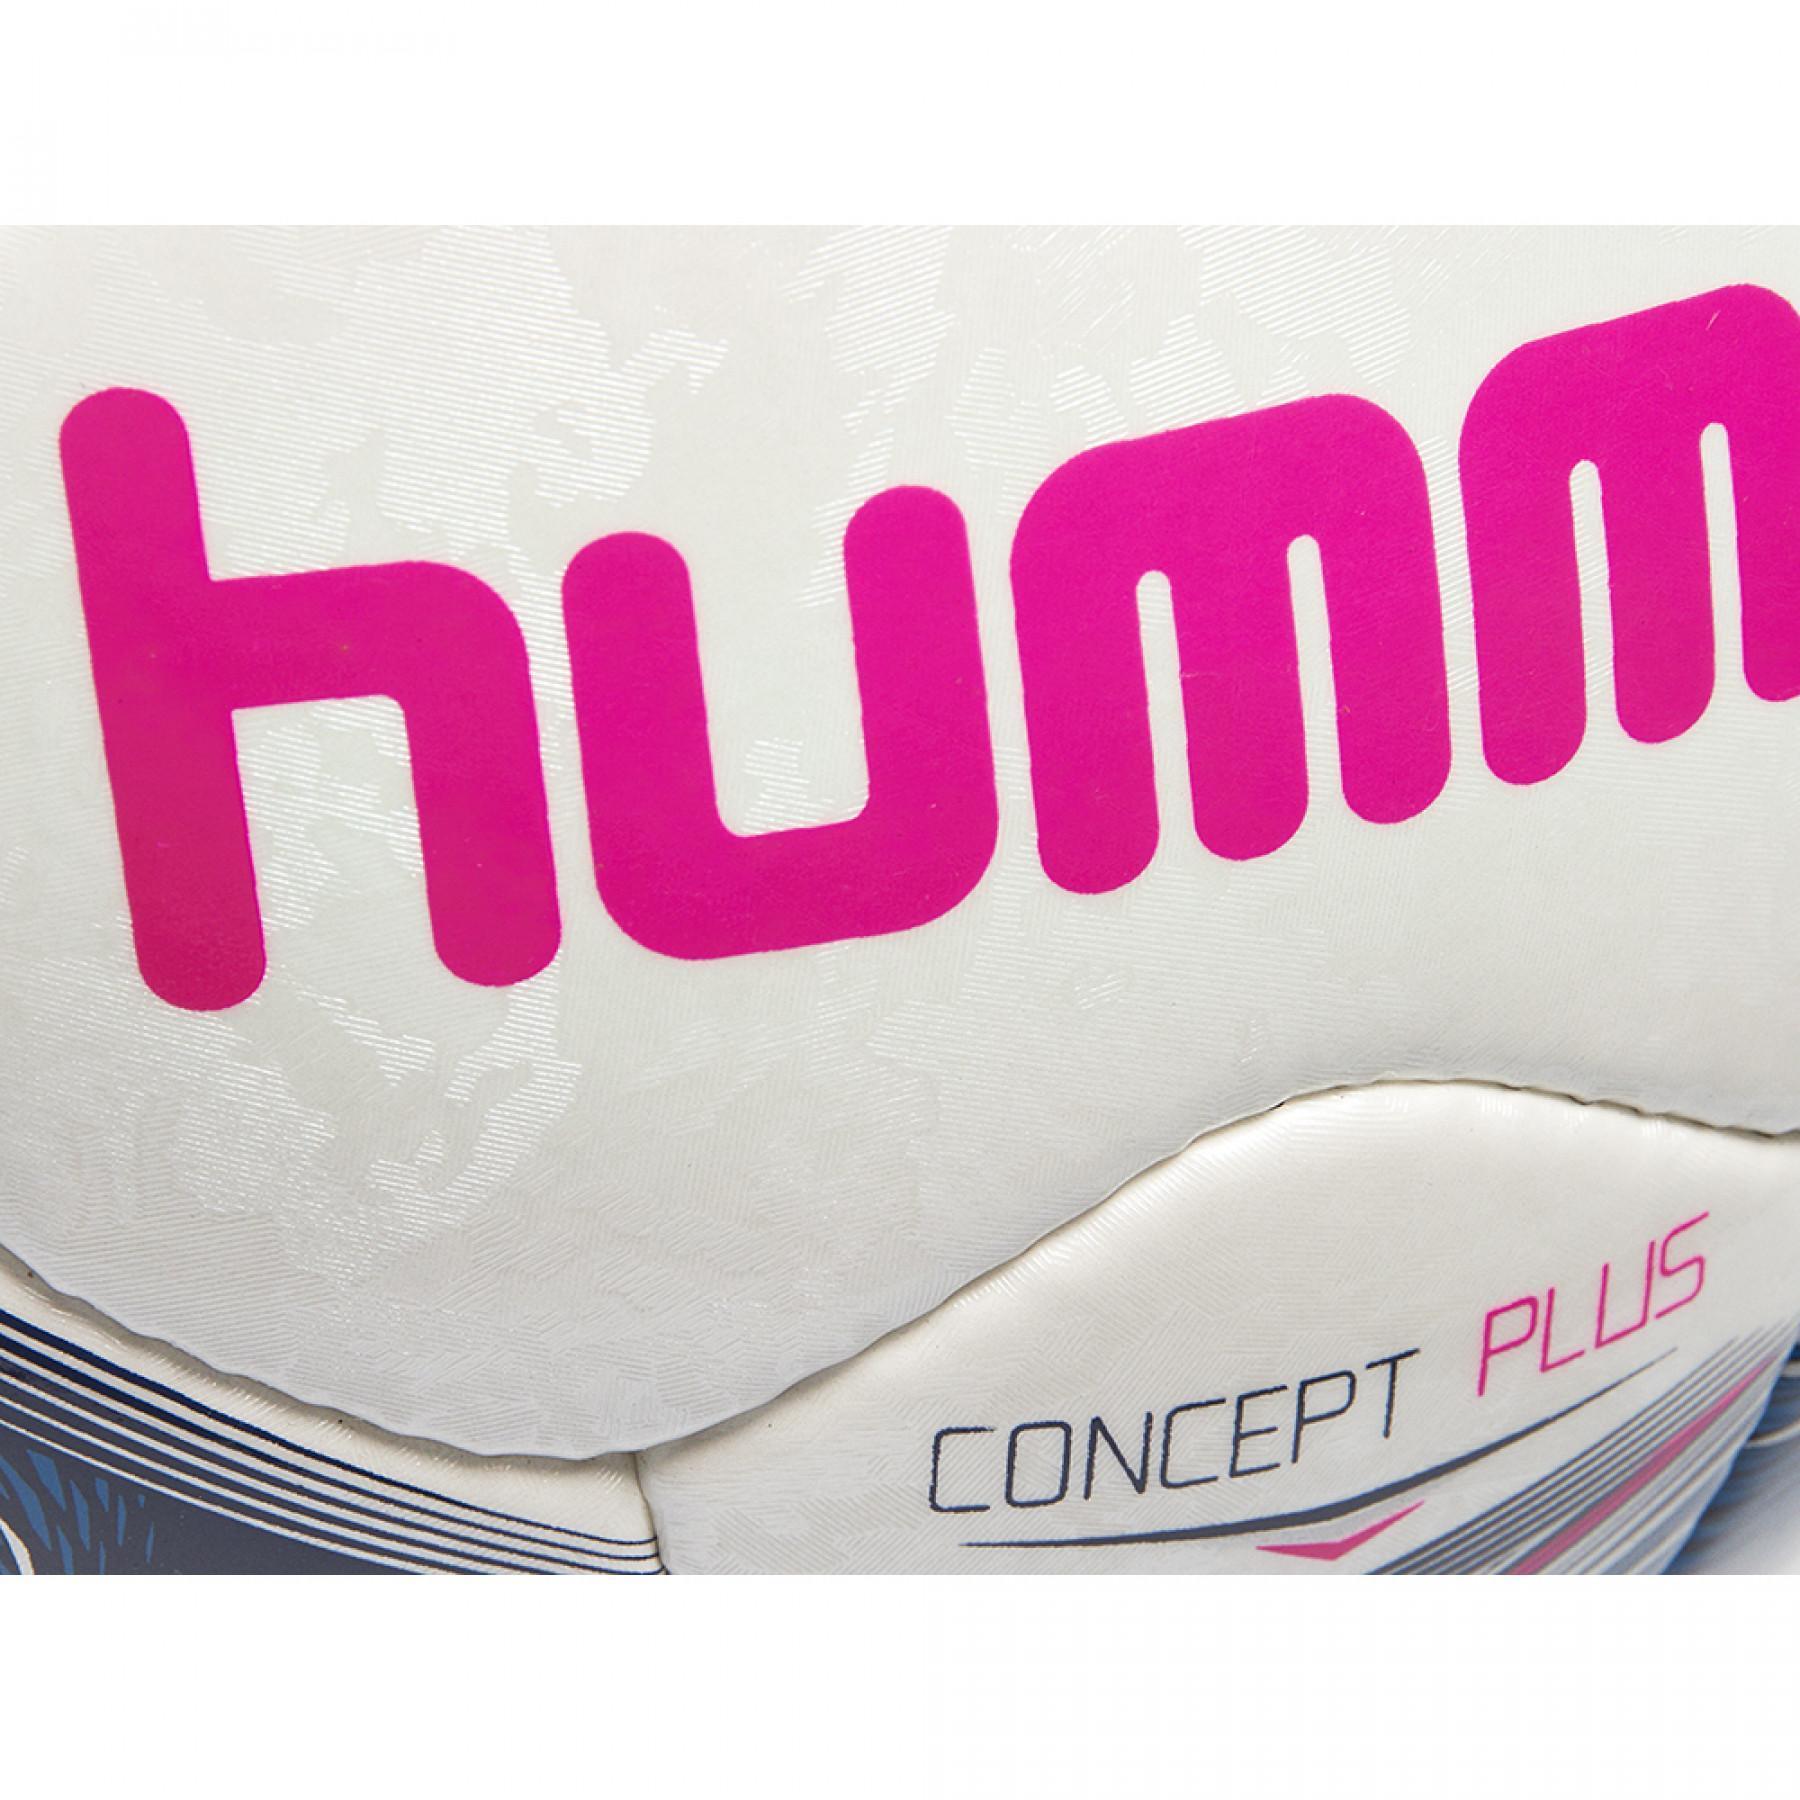 Fotboll Hummel concept plus